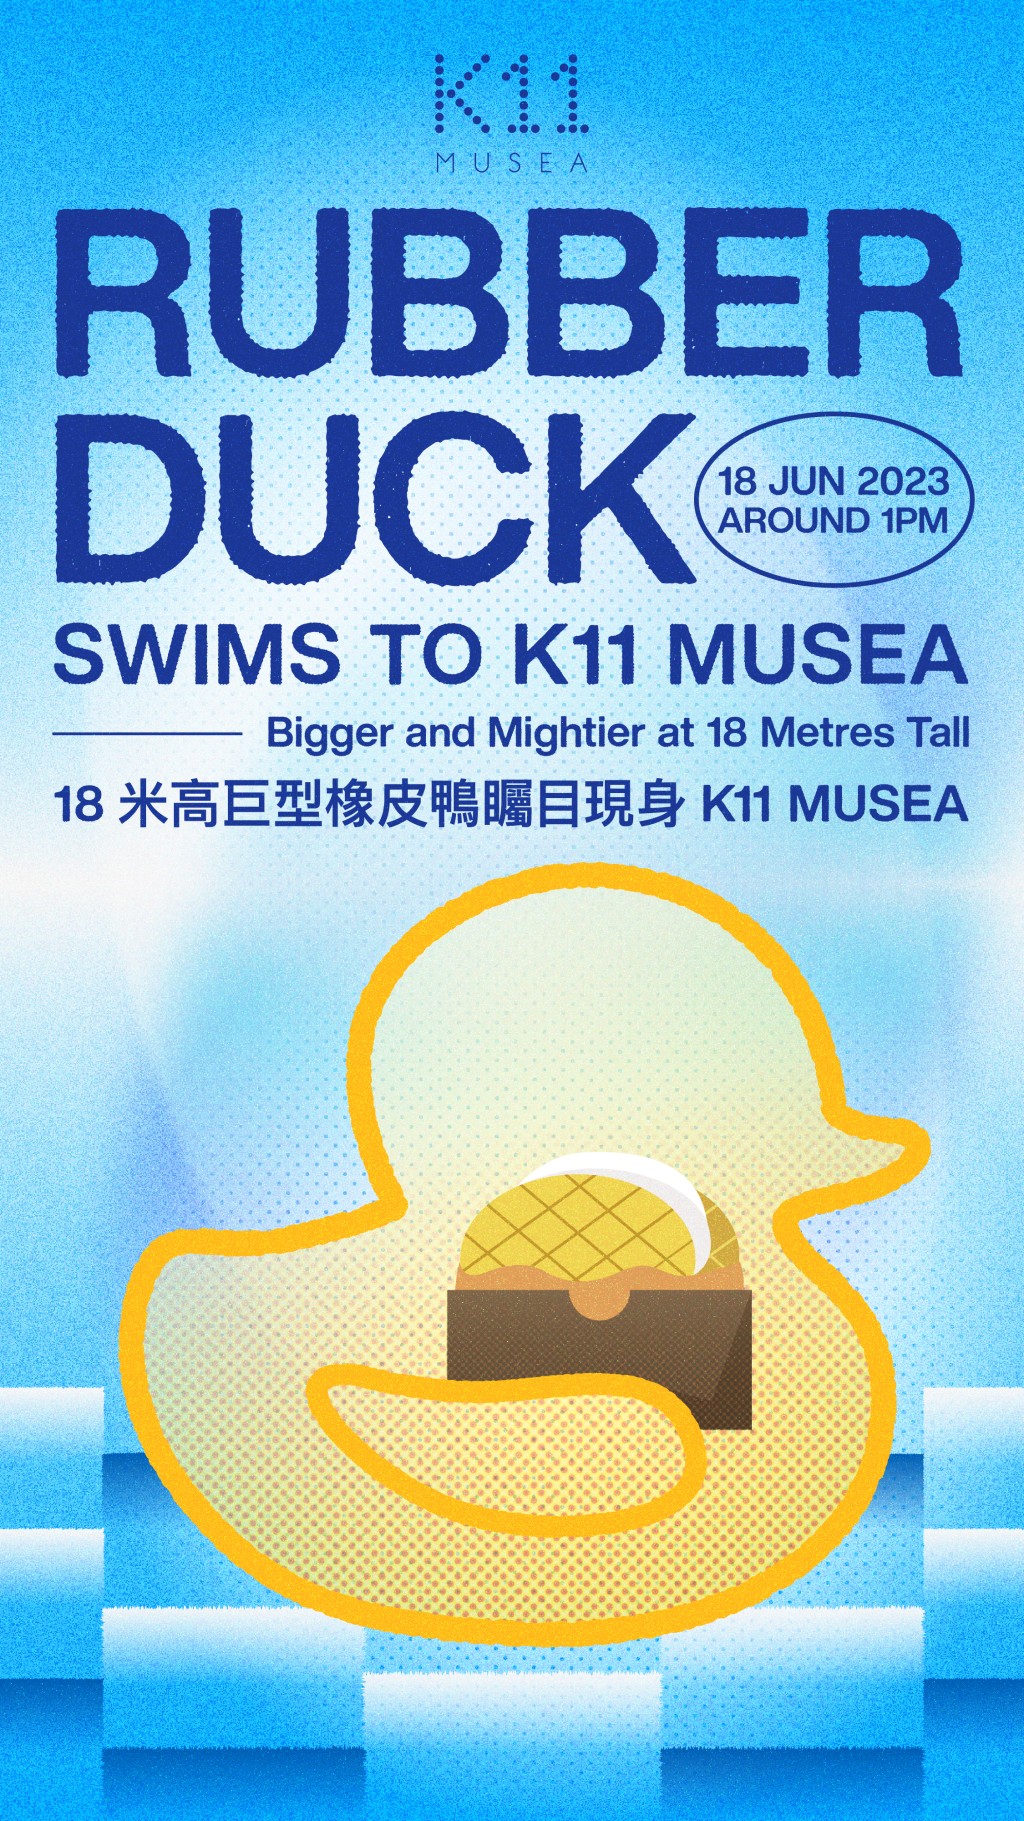 橡皮鴨下周日下午1至2時將游到 K11 MUSEA。